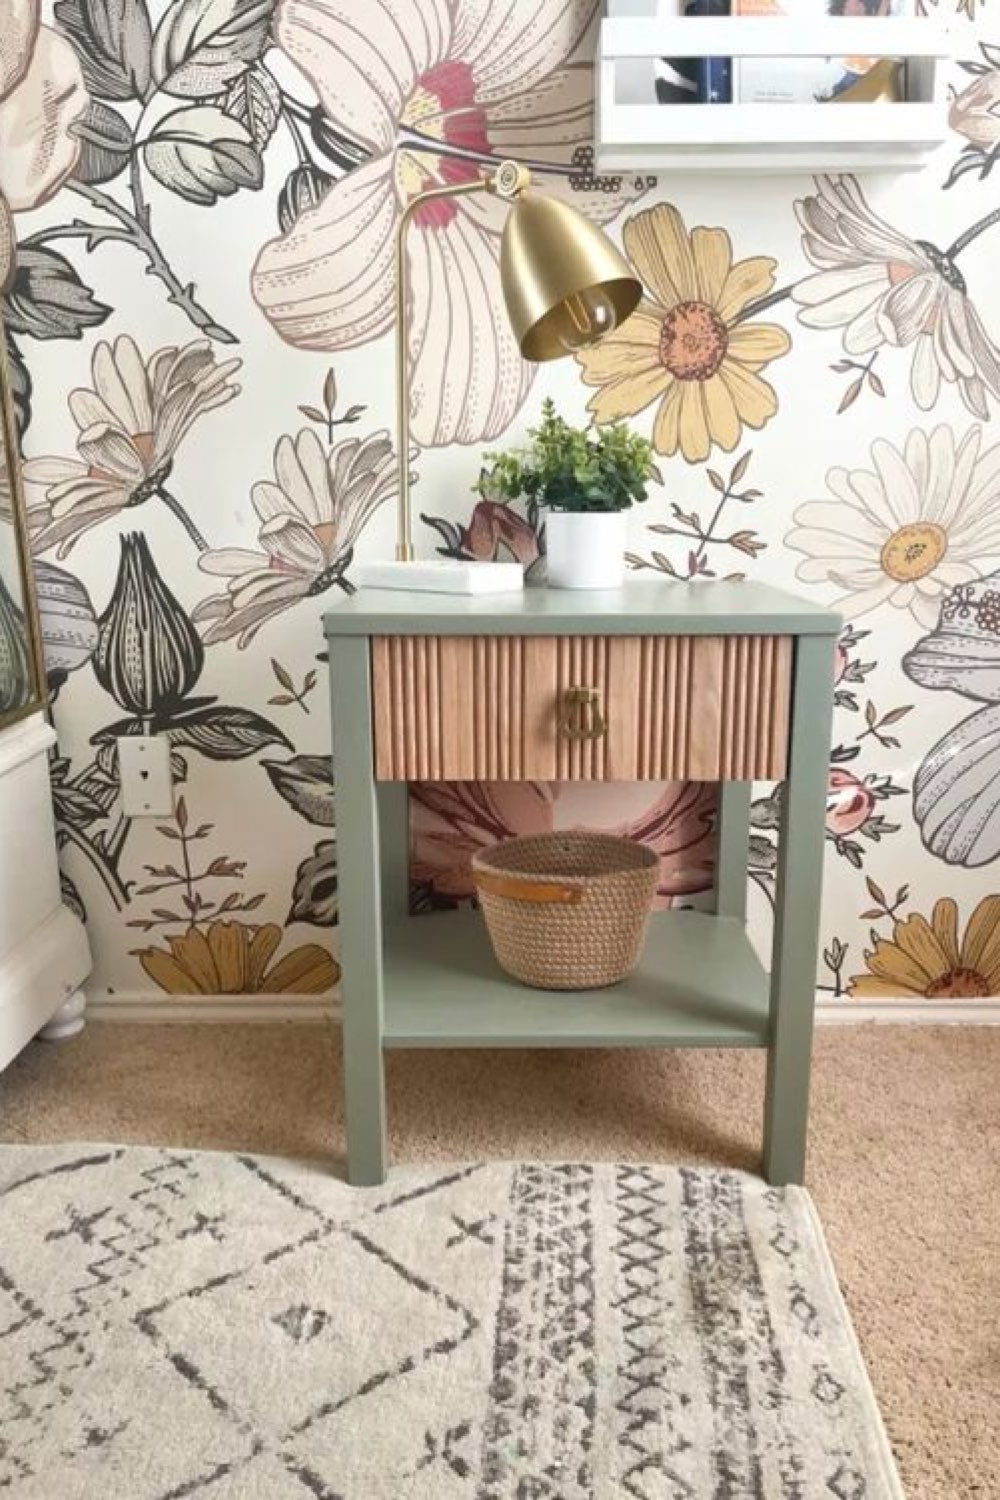 relooking table de chevet exemple moderne couleur vert sauge et bois chambre romantique papier peint à fleurs